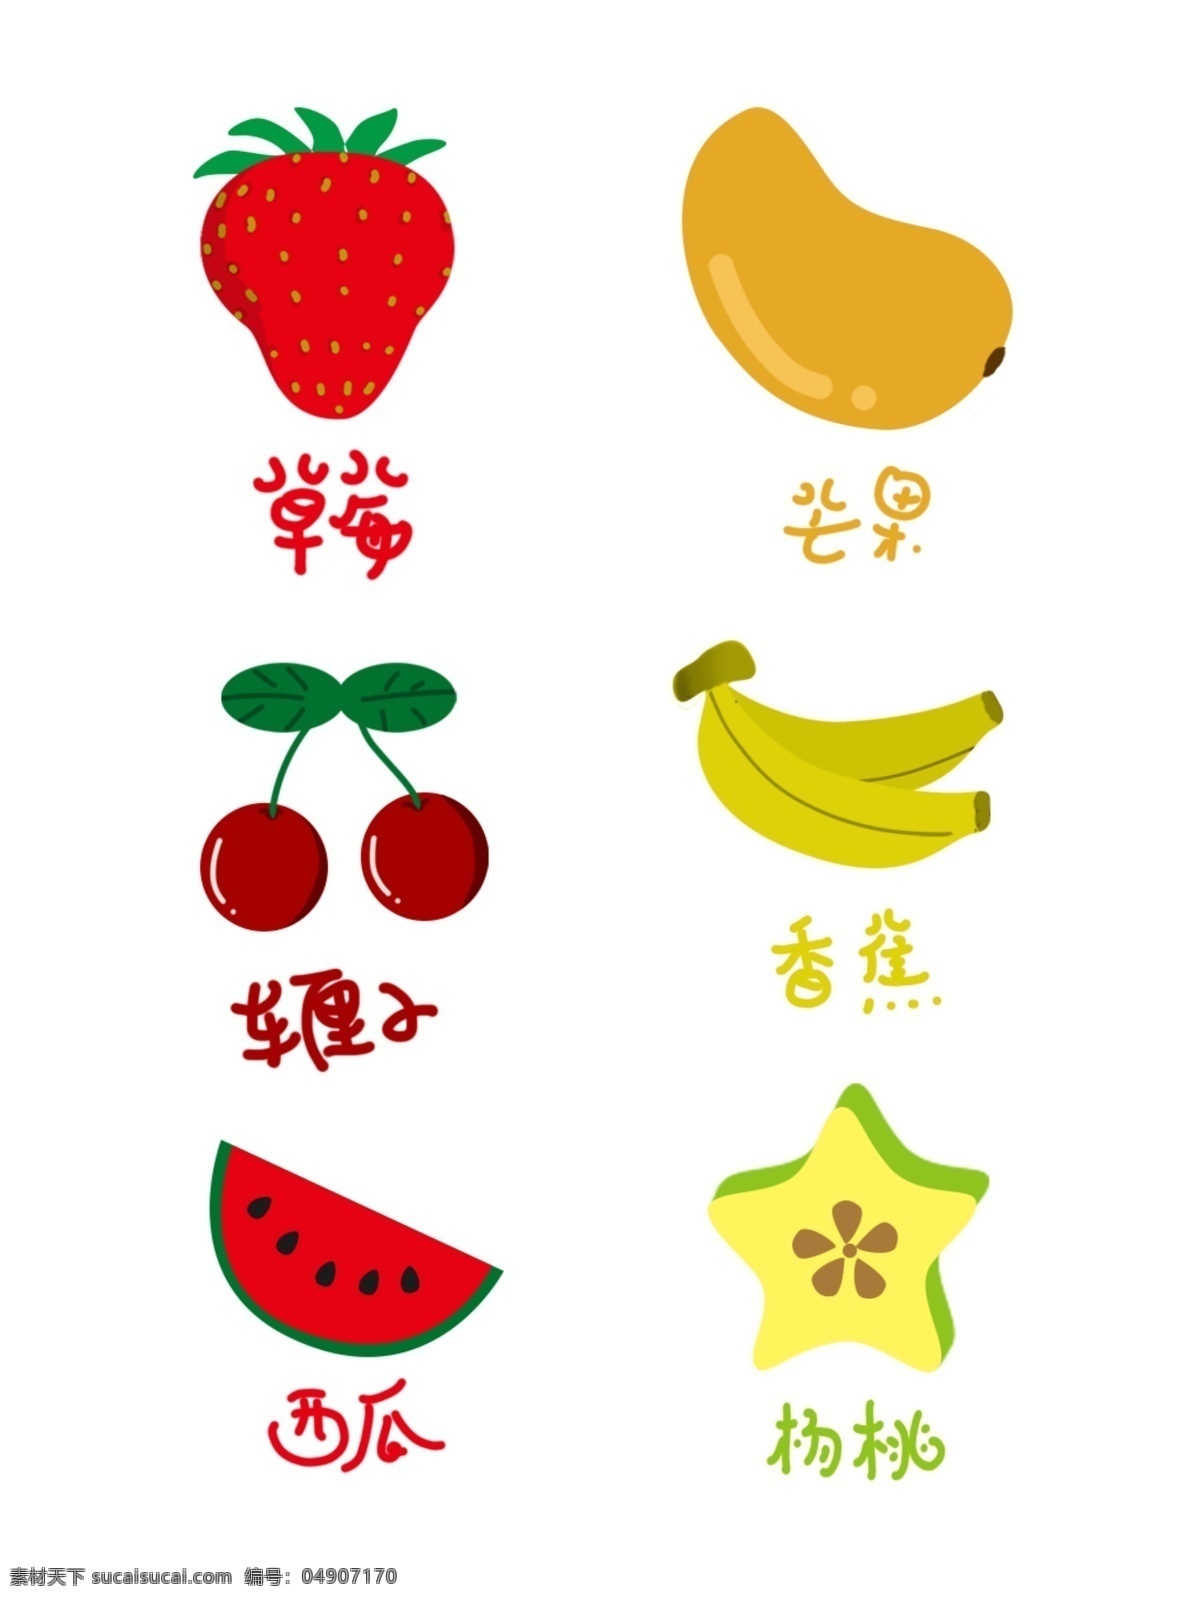 四月 水果 草莓 芒果 车 厘 子 香蕉 西瓜 杨桃 四月水果素材 四月元素 水果素材 车厘子